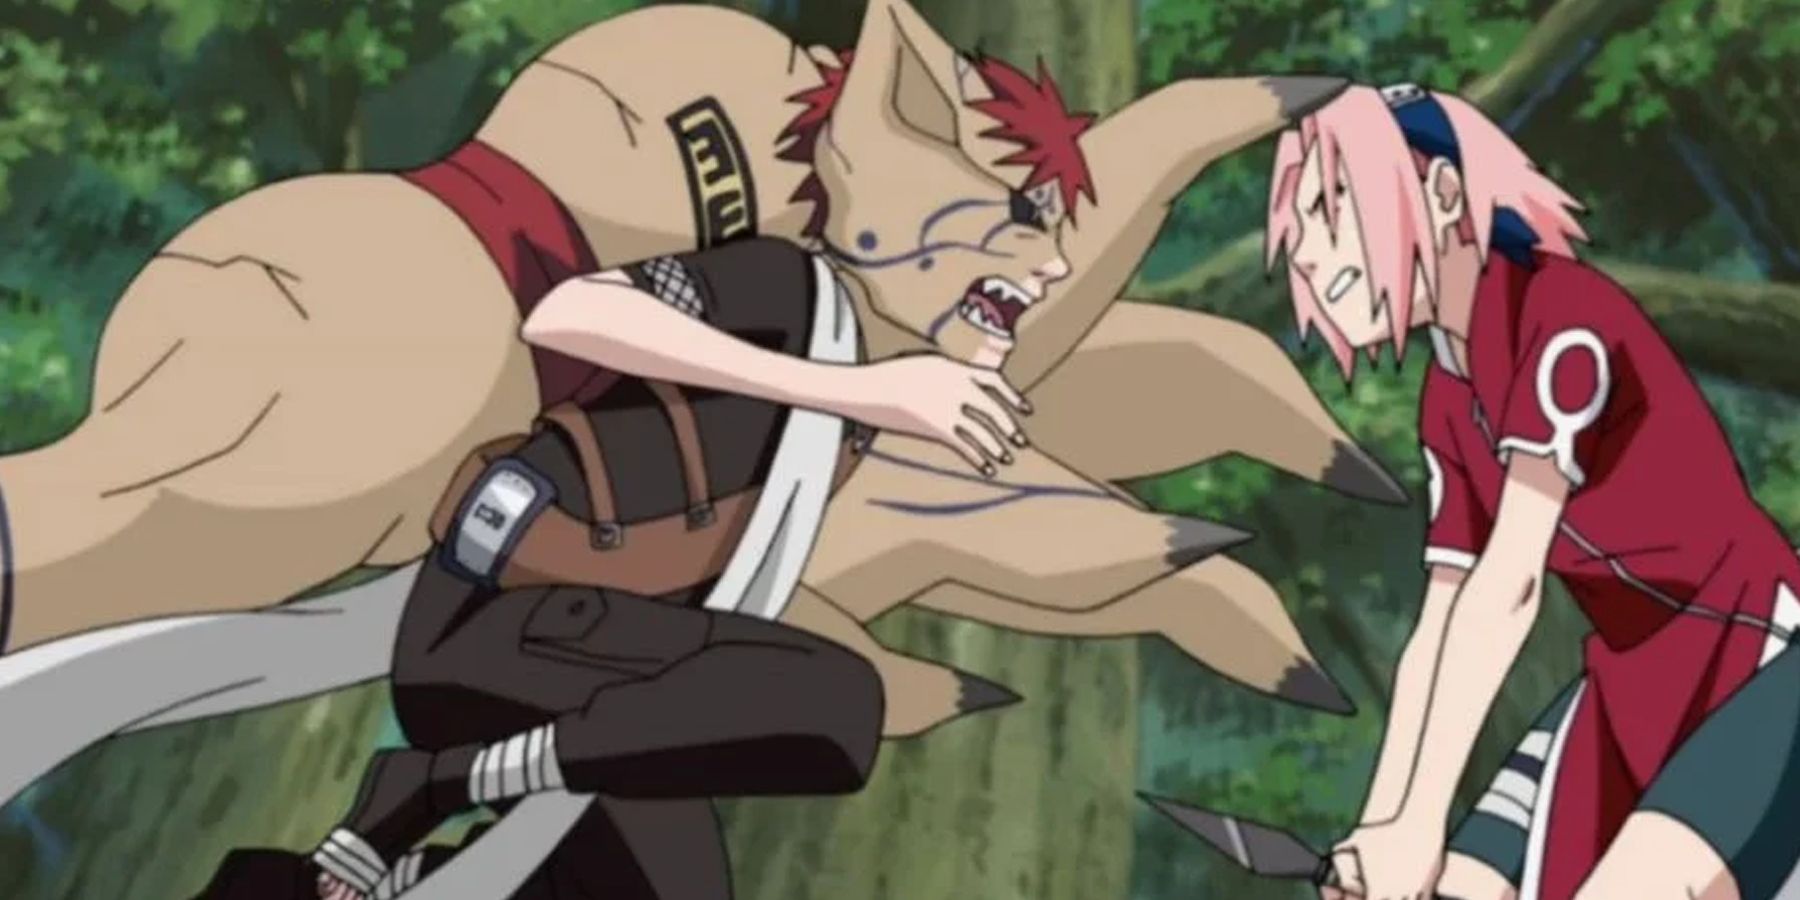 Sakura protects Naruto and Sasuke from Gaara